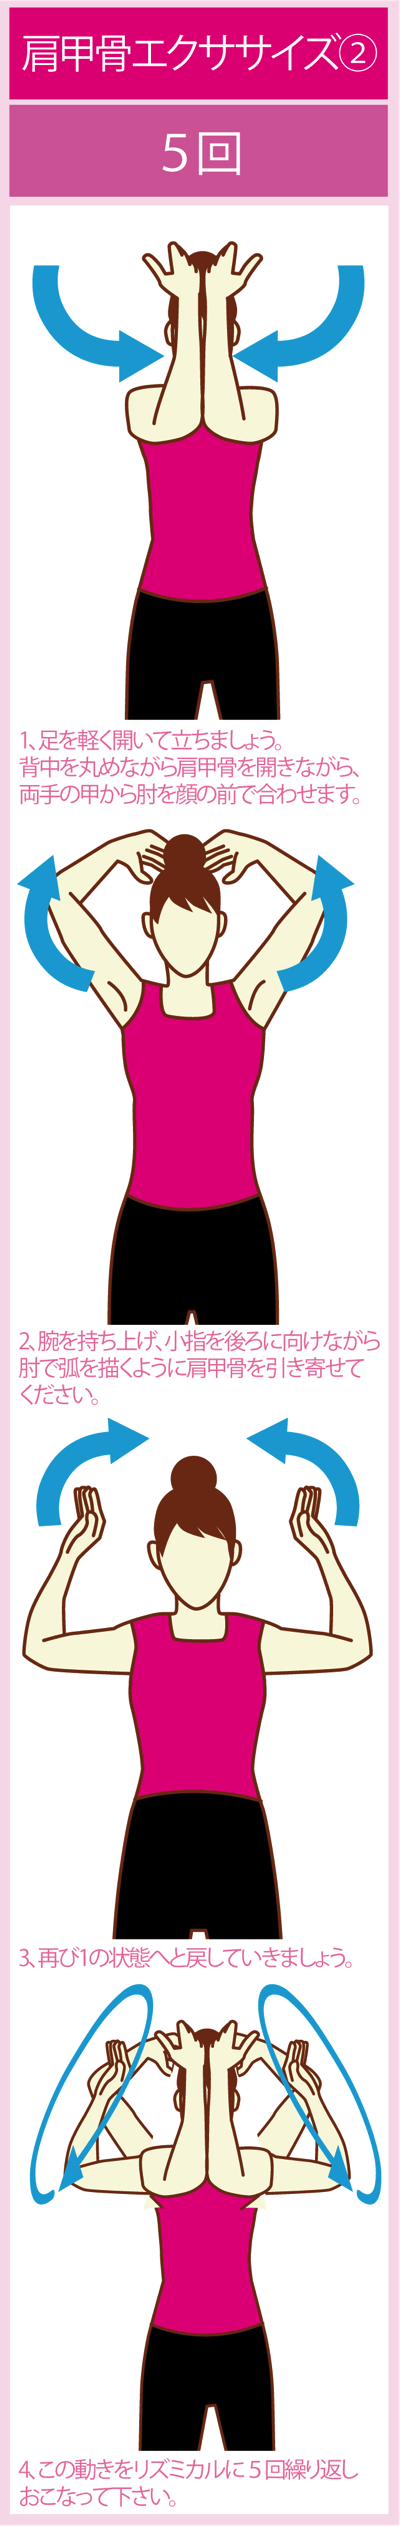 肩甲骨の可動域を広げるエクササイズ2